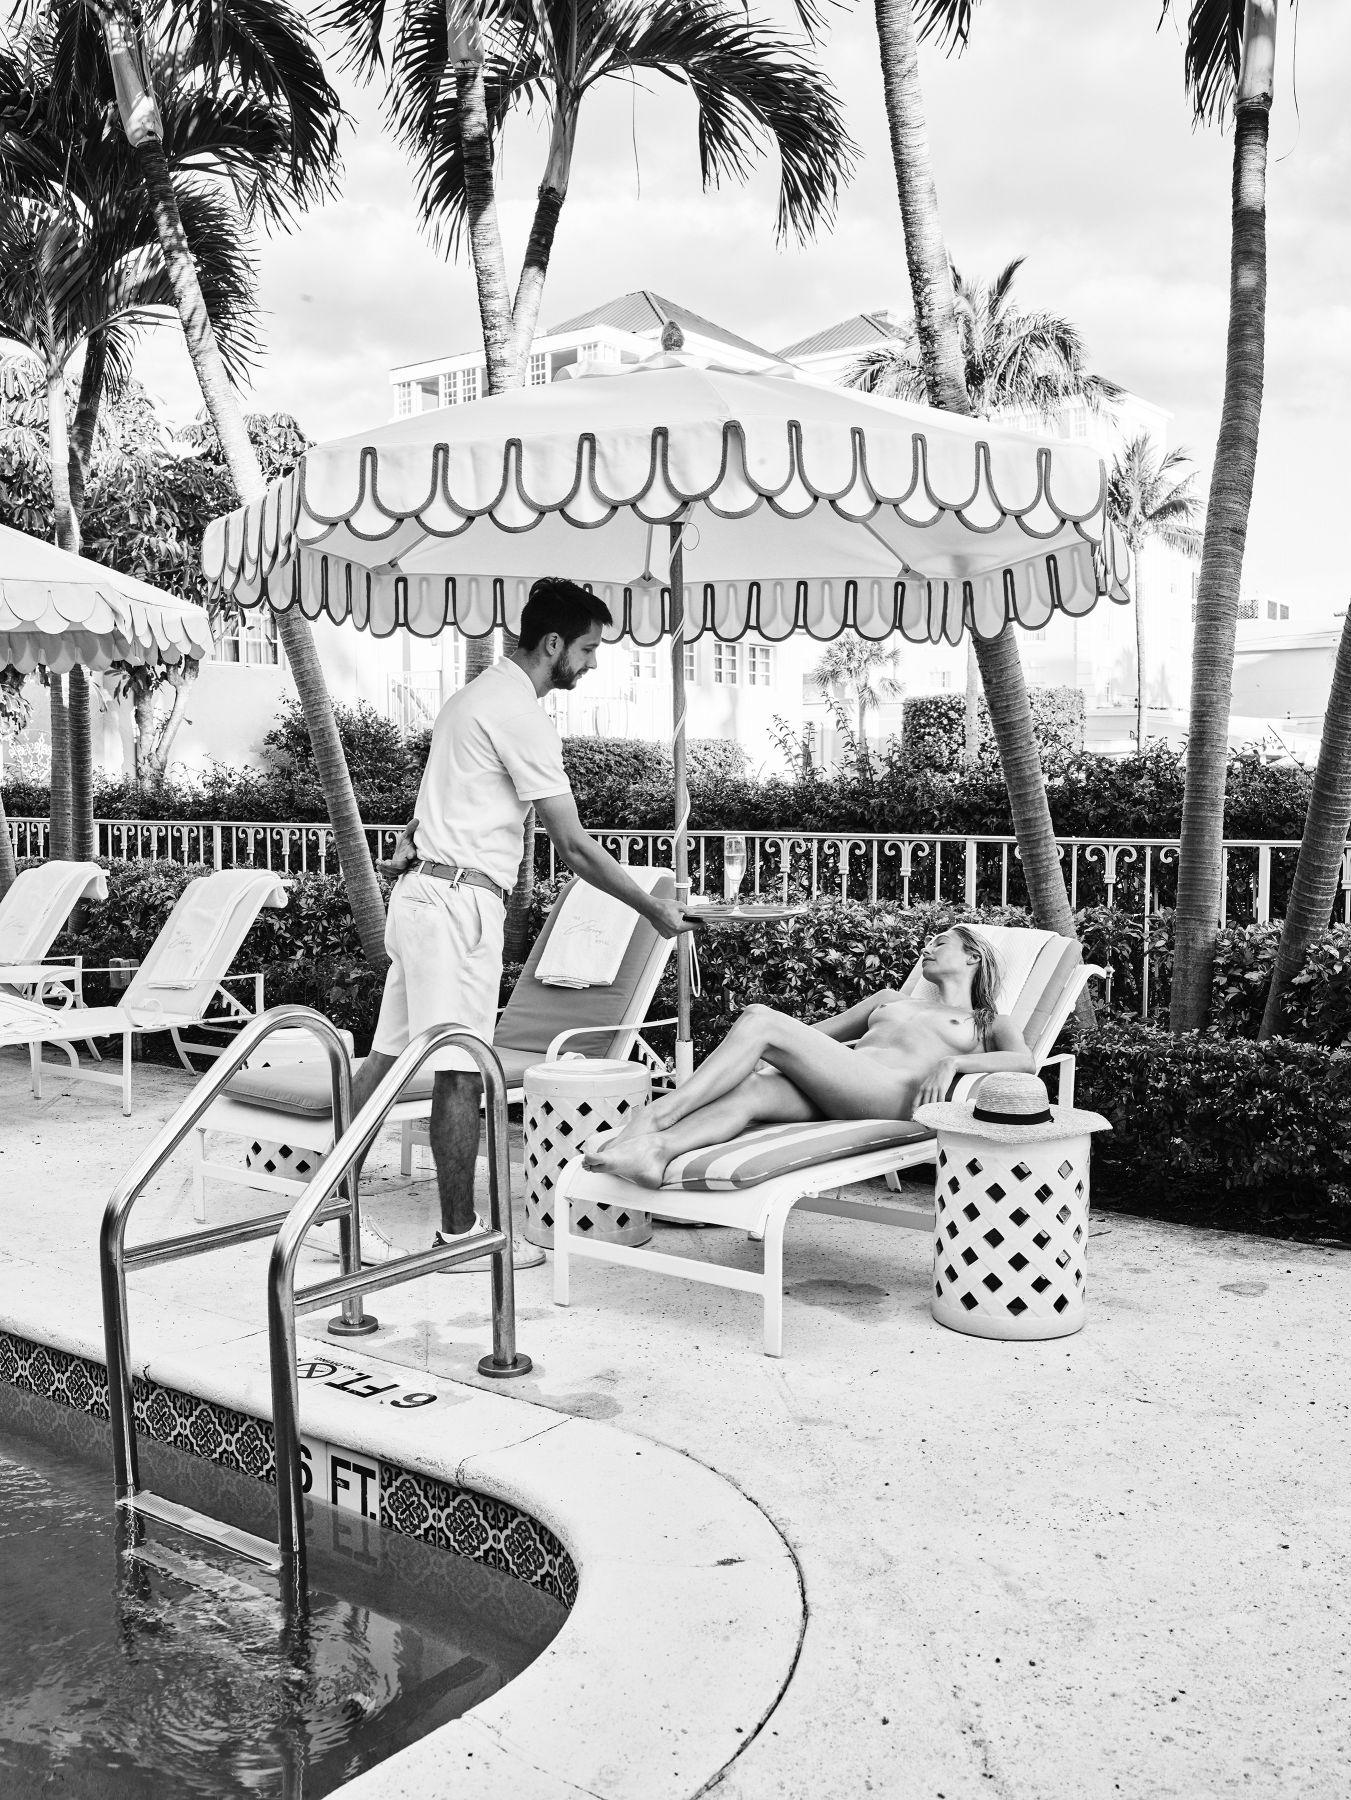 Nathan Coe Black and White Photograph - Palm Beach Siesta